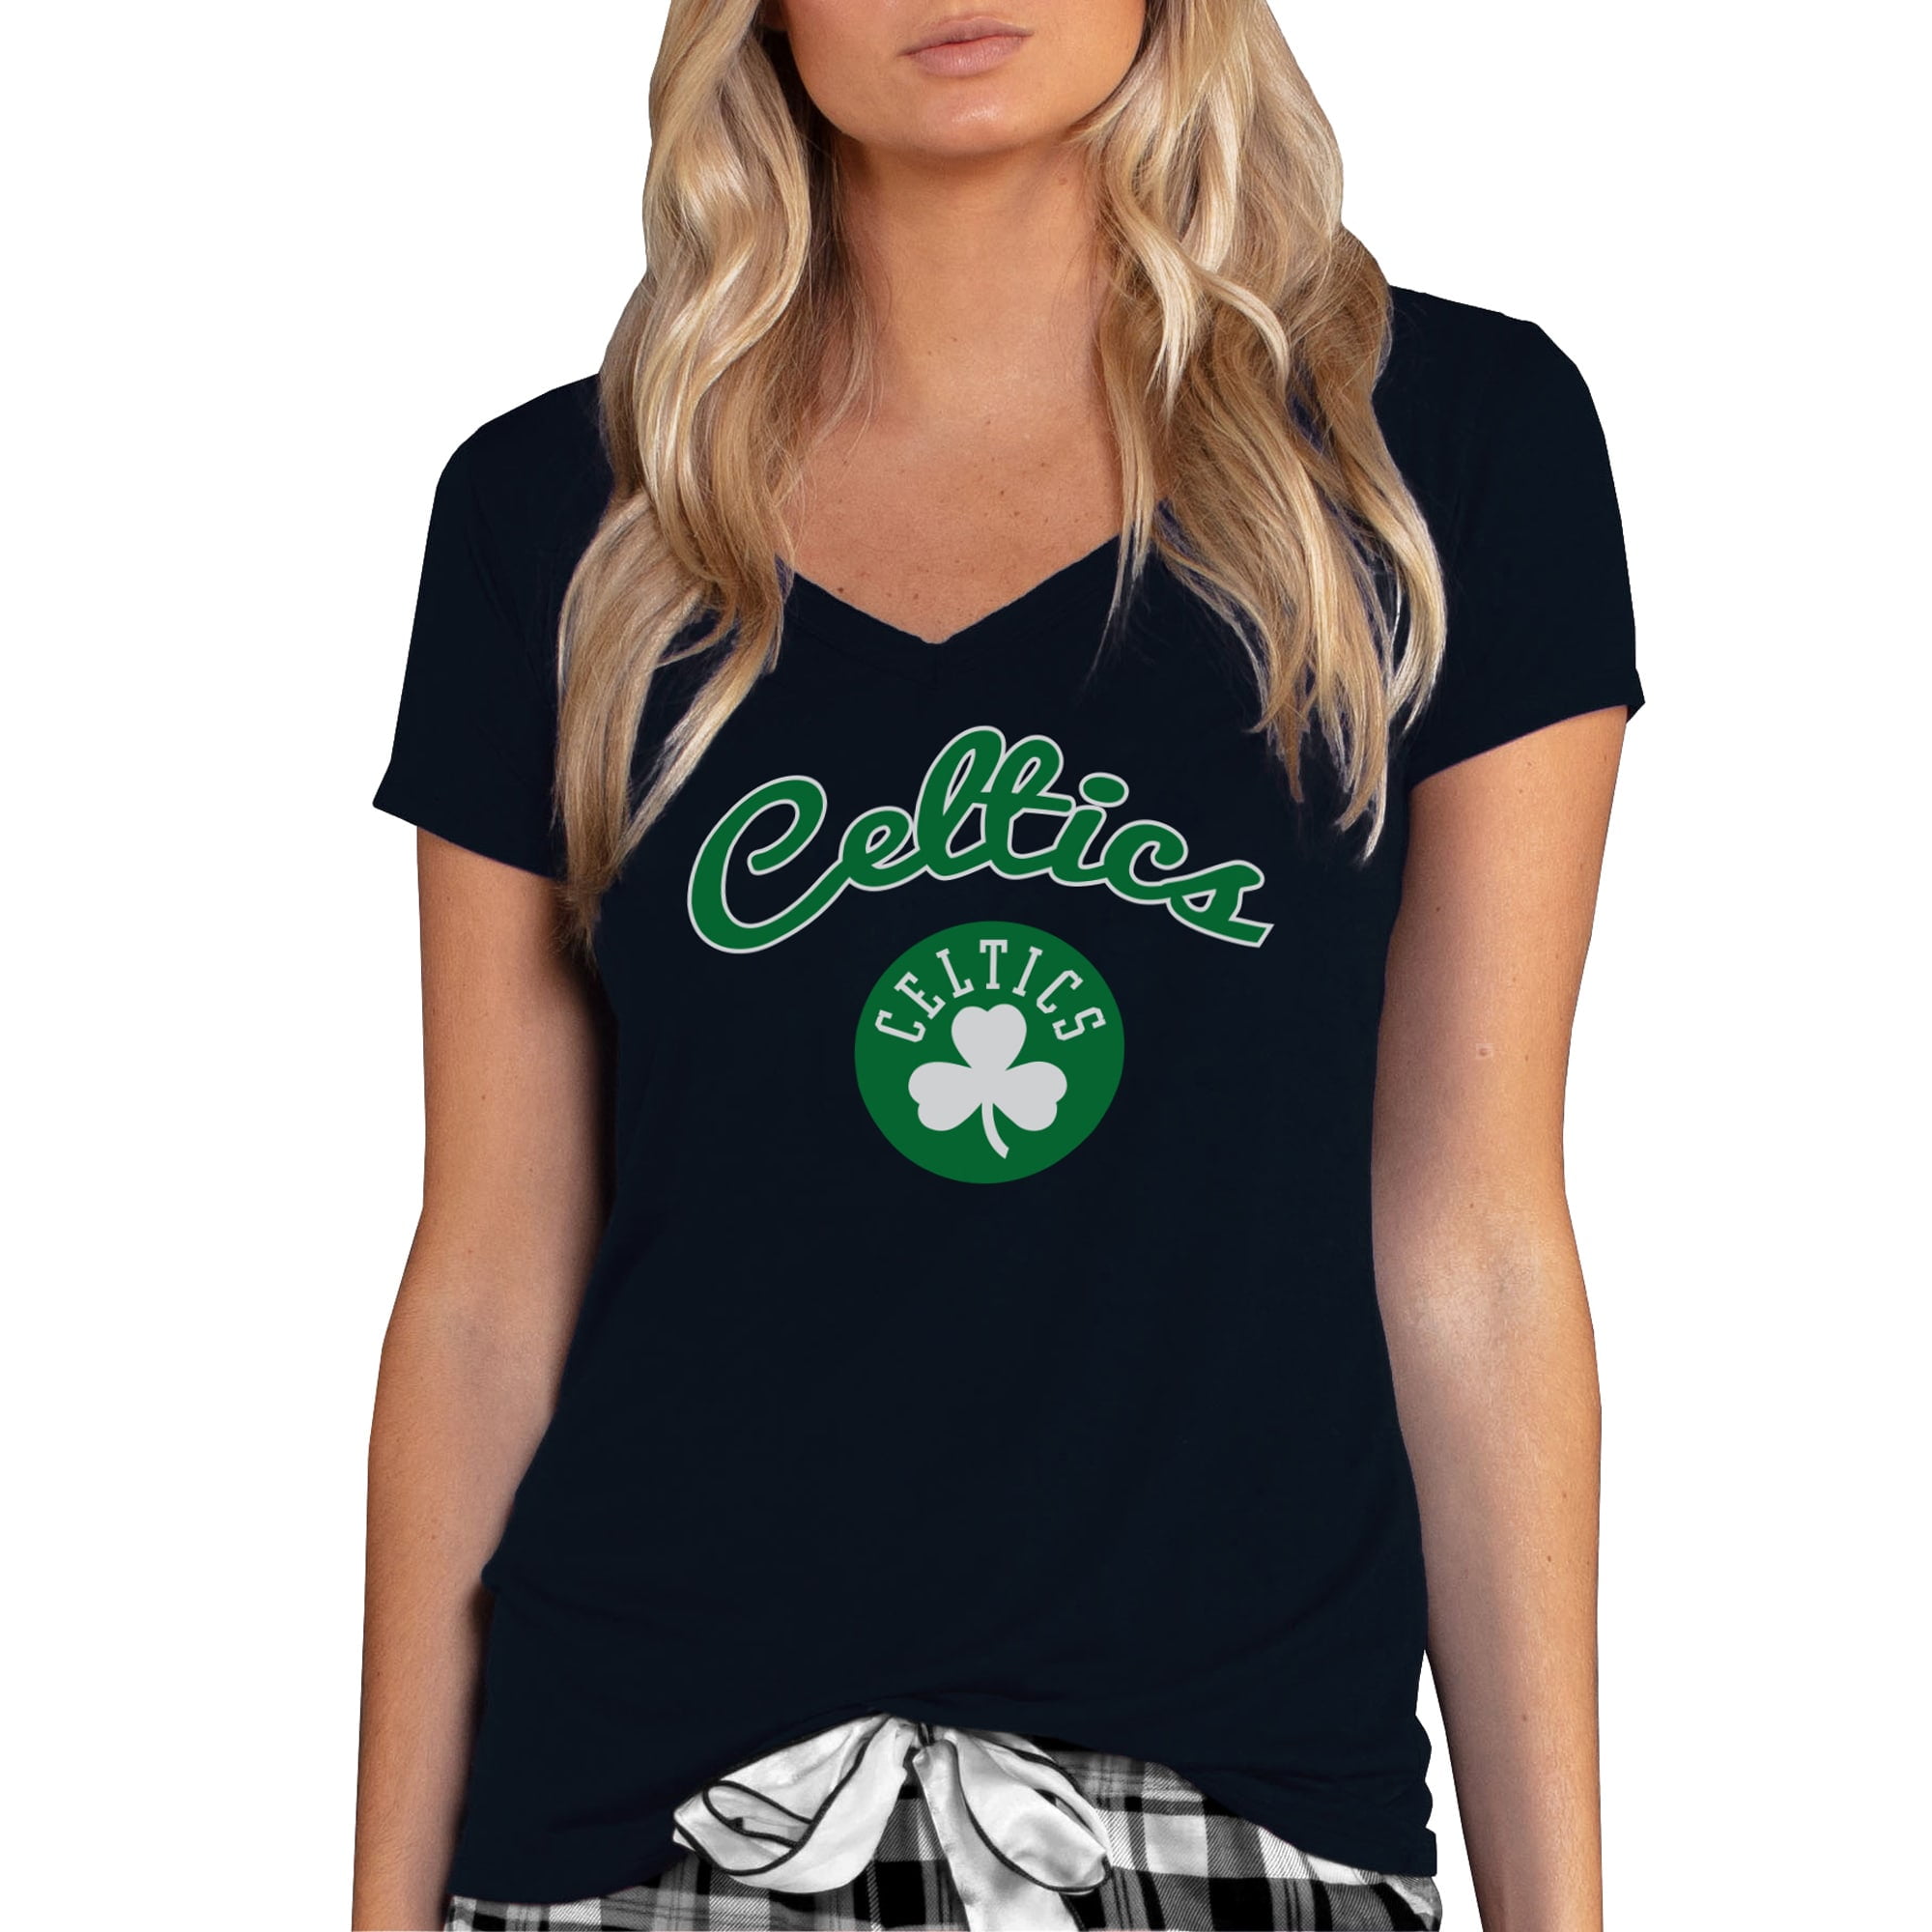 celtics women's shirt